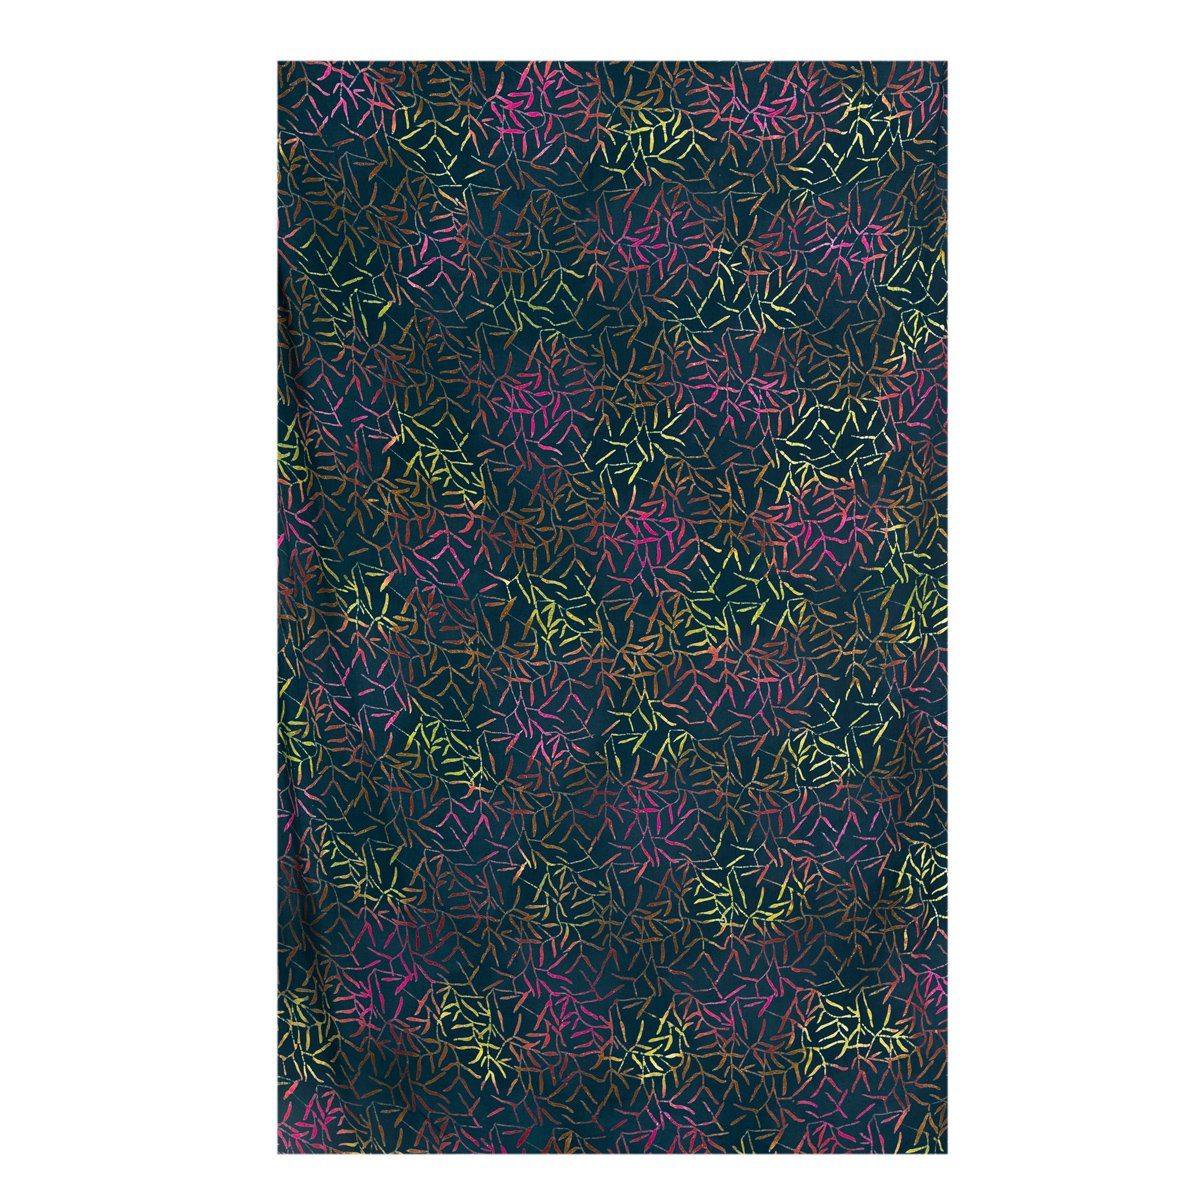 PANASIAM Halstuch Schal als Wickelkleid Jahreszeit Strandtuch oder wunderbar B803 bamboo jede aus ob weicher Sarong für Viskose egal dark Wachsbatik Schultertuch